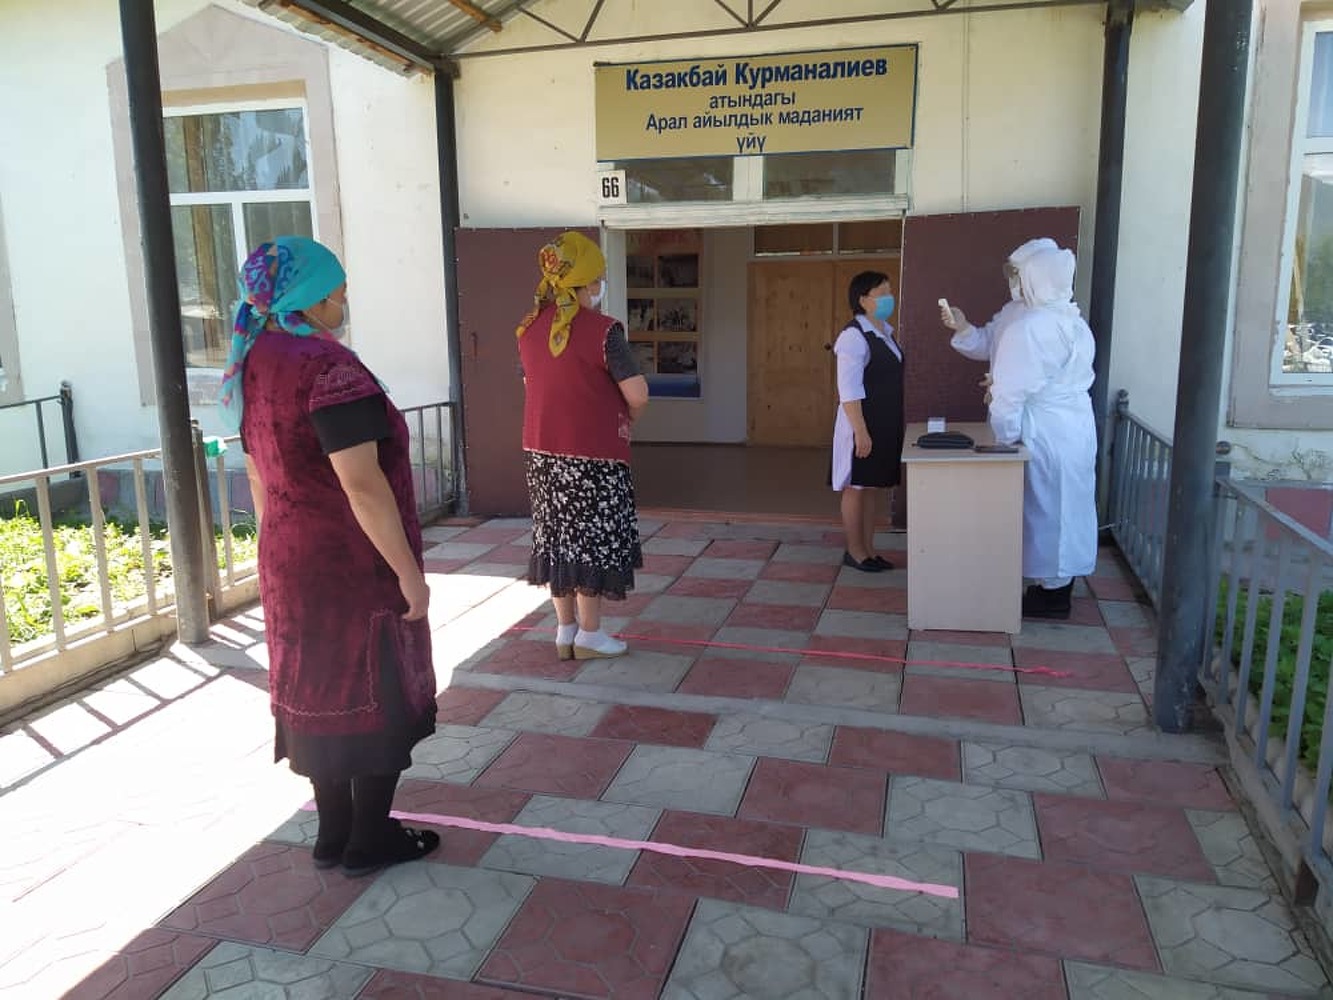 Фото - В Тюпском районе проходят выборы главы Аралского айыл окмоту — Today.kg